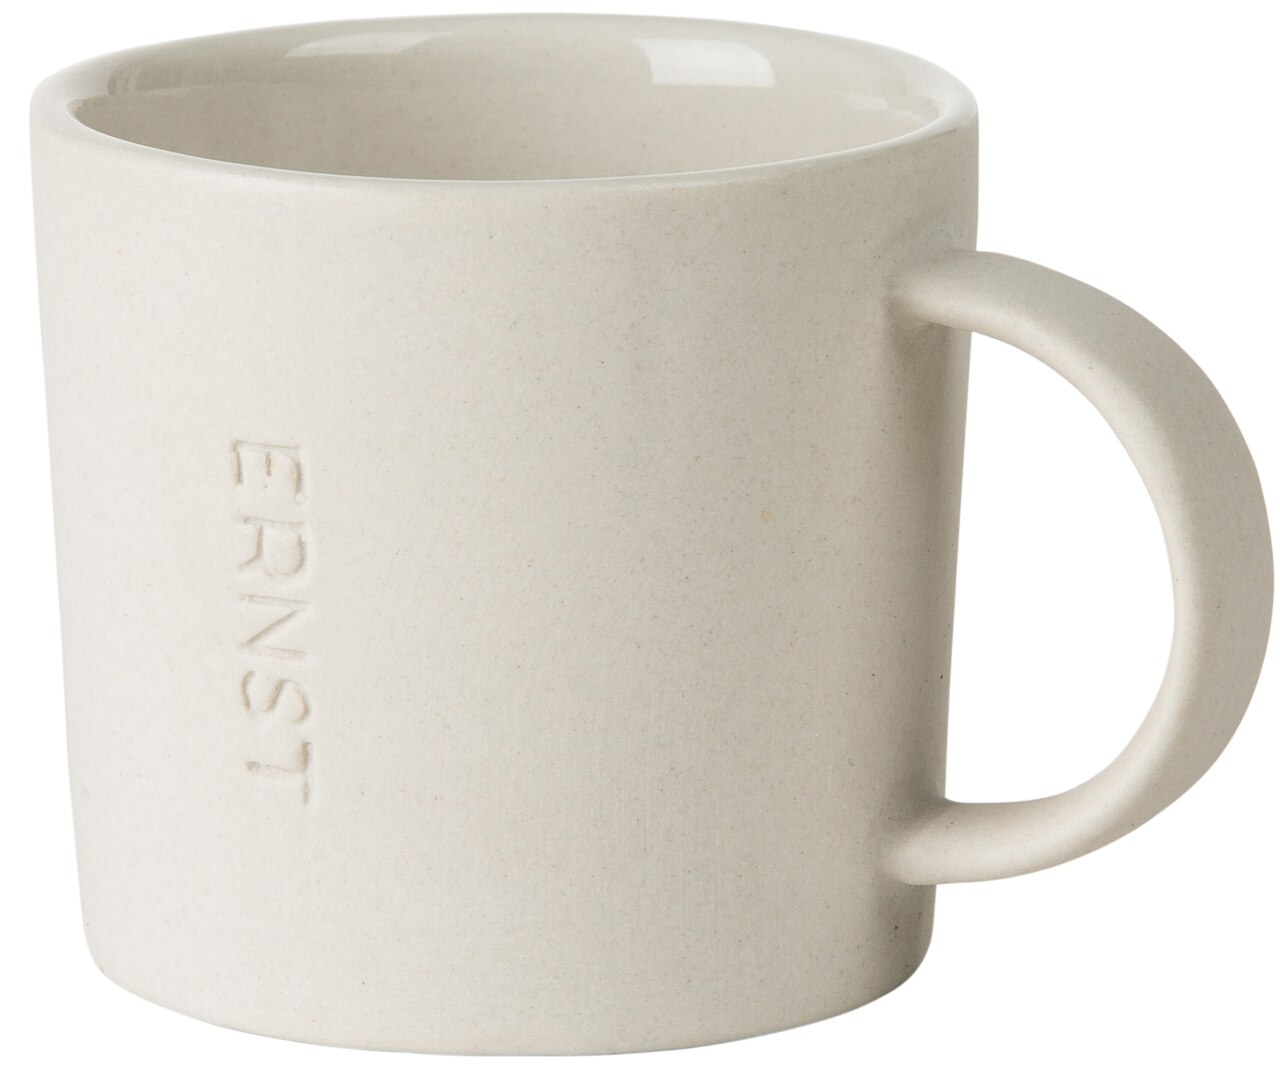 Ernst White Stoneware Expresso Cup 